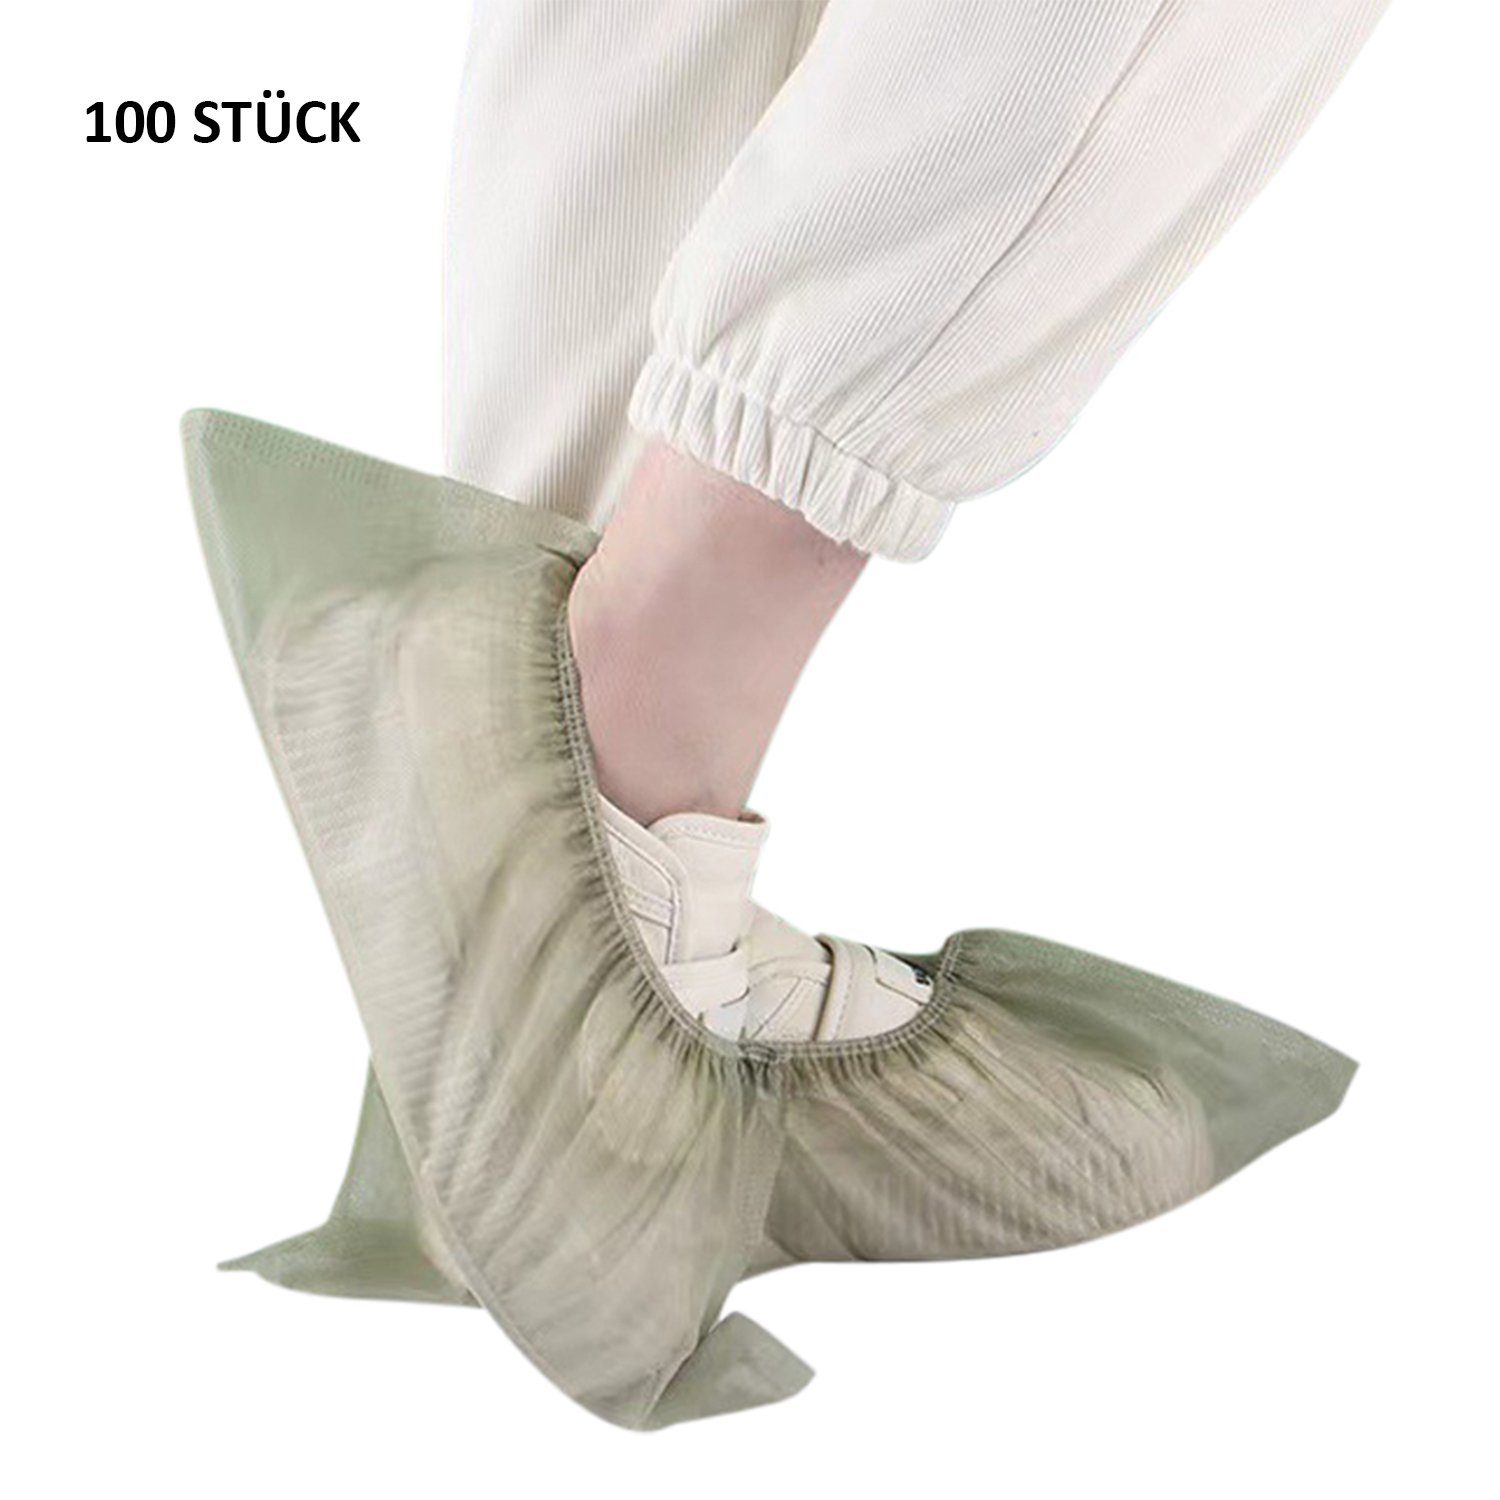 Stück Grün Einweg-Stiefel Schuhüberzieher rutschfest hygienische Daisred 100 Schuhüberzieher